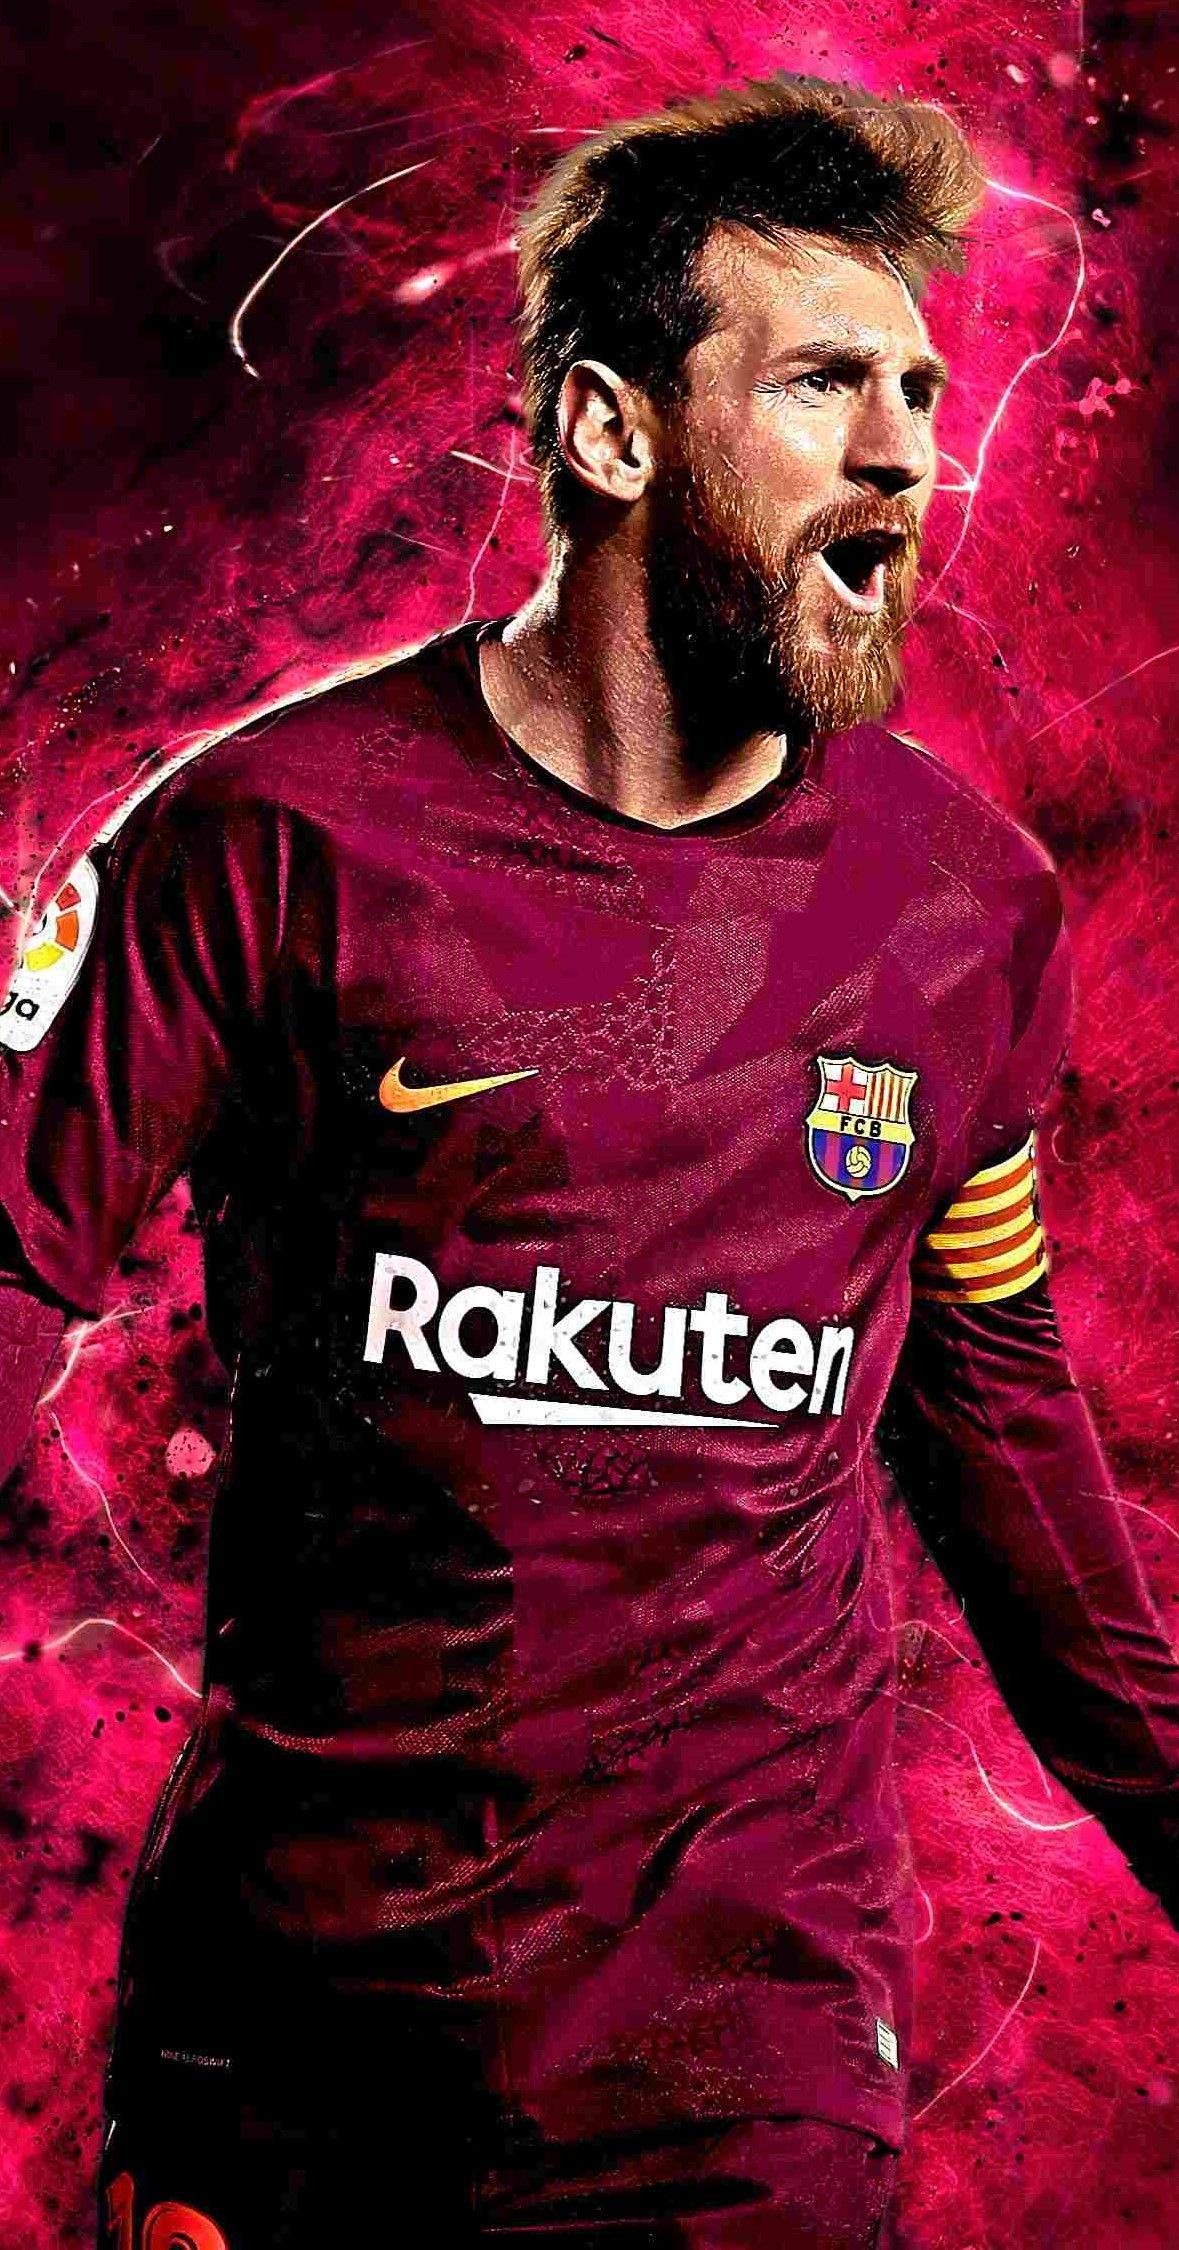 Messi Wallpaper 4K Ultra HD. Fotos de jogadores de futebol, Jogadores de futebol, Imagens de futebol